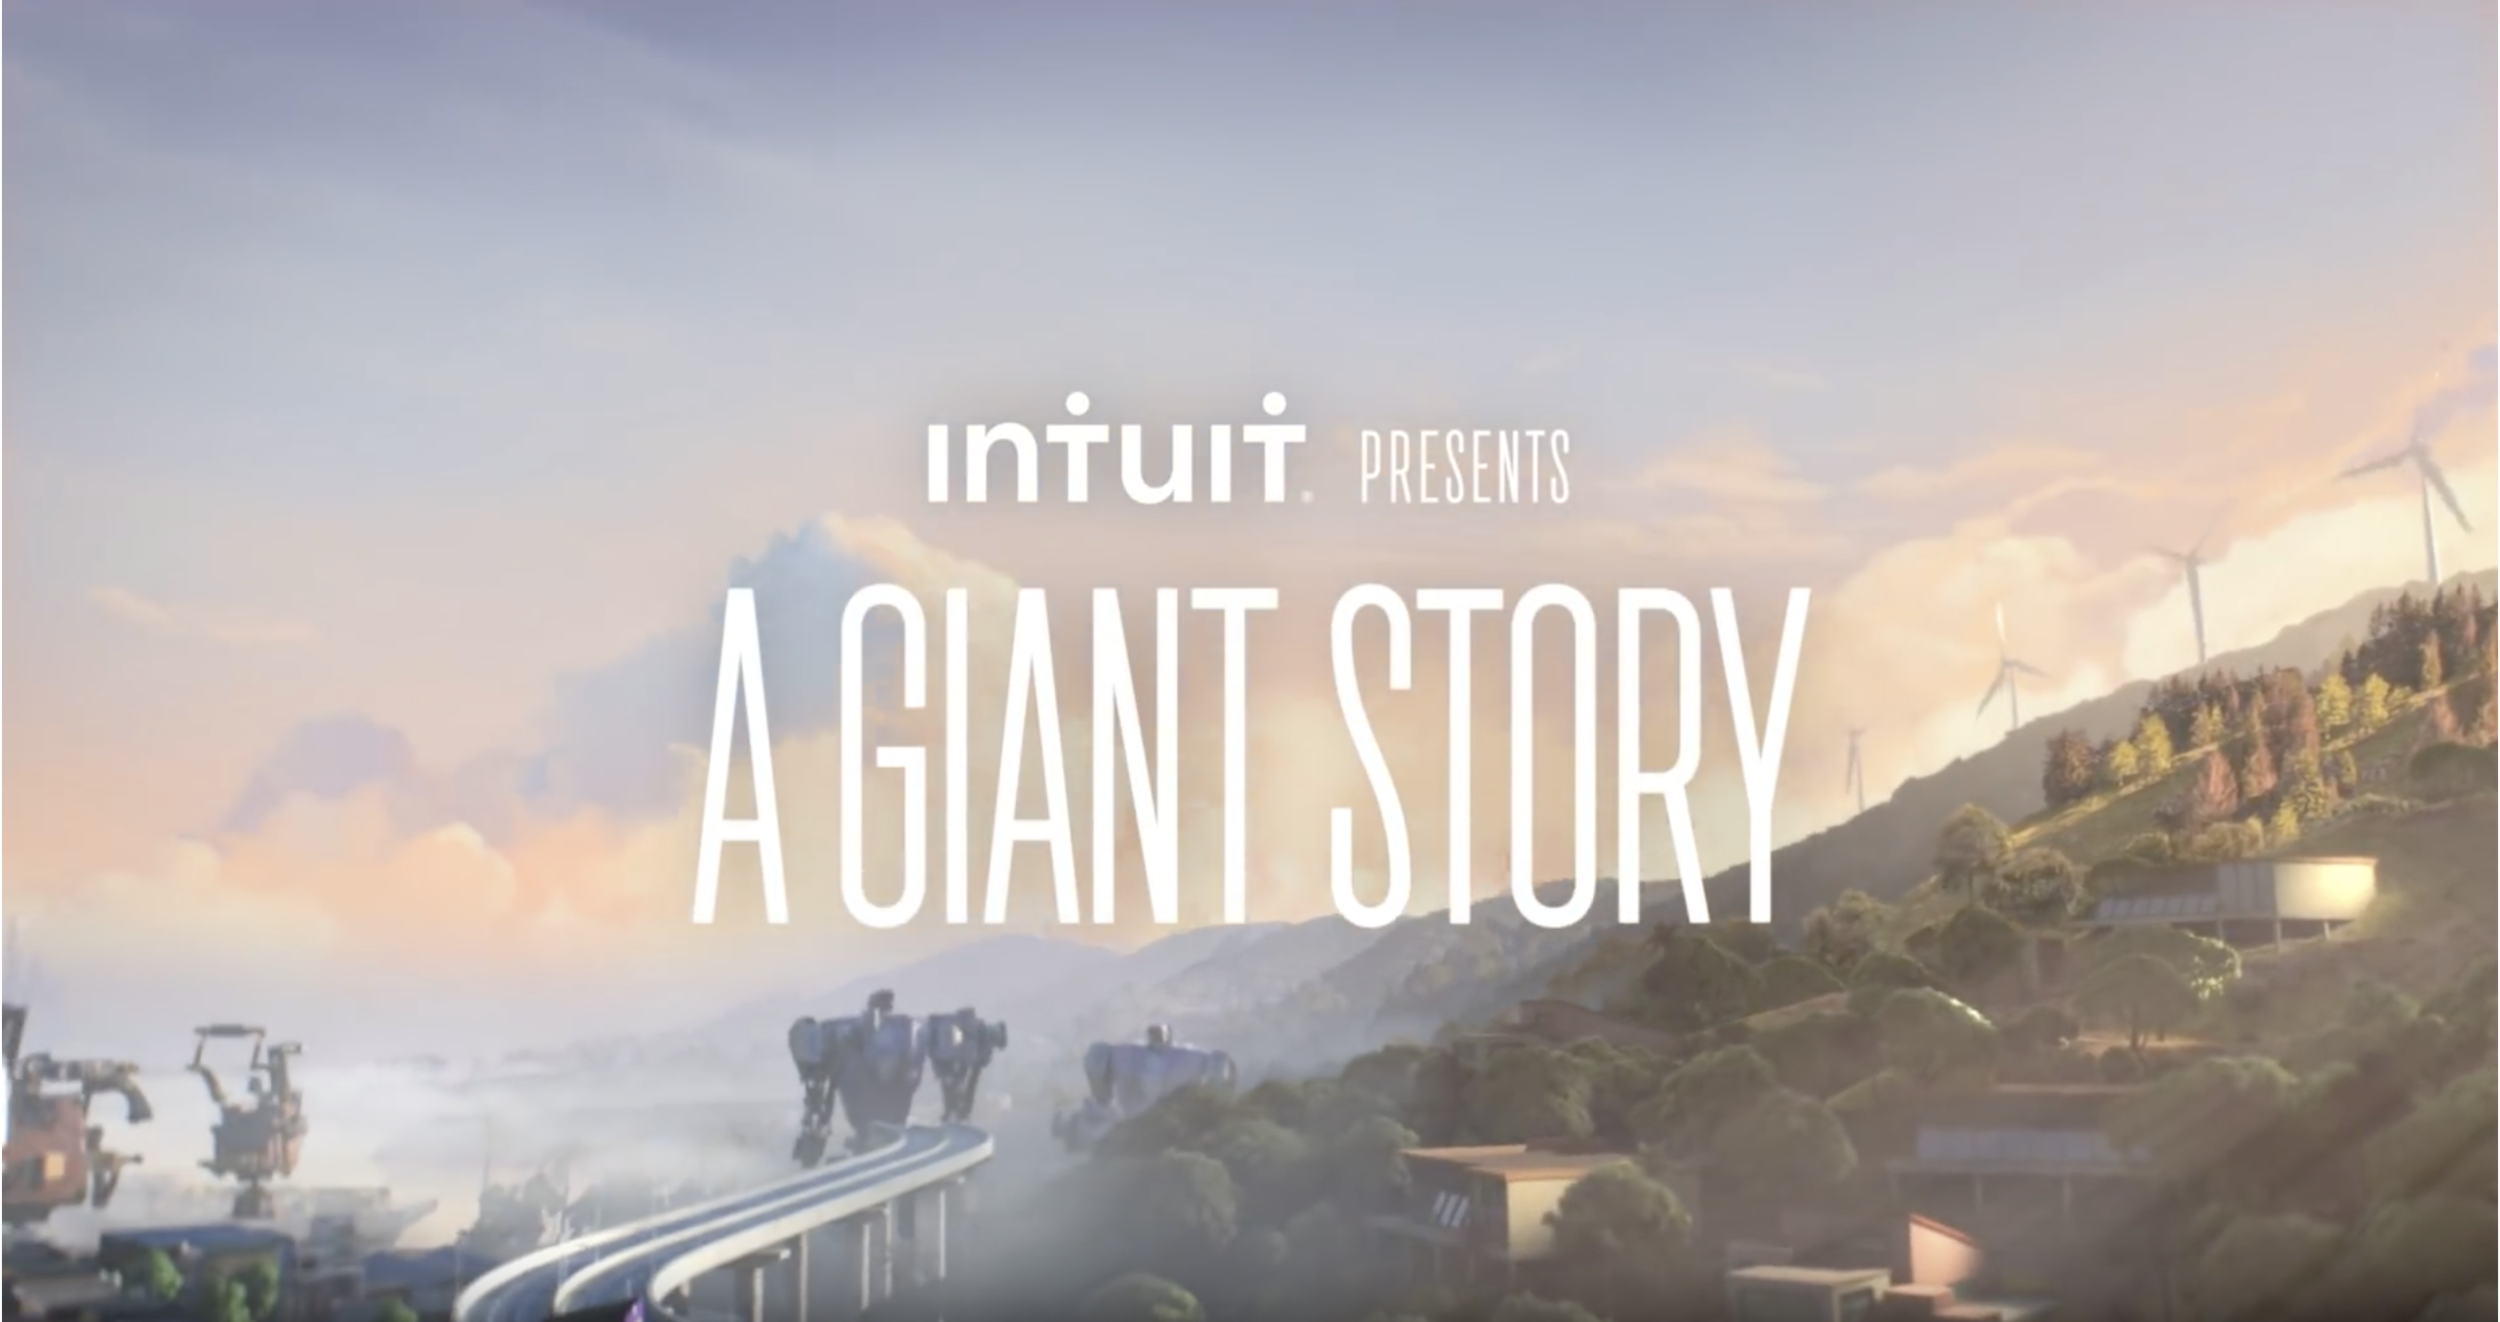 Káº¿t quáº£ hÃ¬nh áº£nh cho intuit a giant story